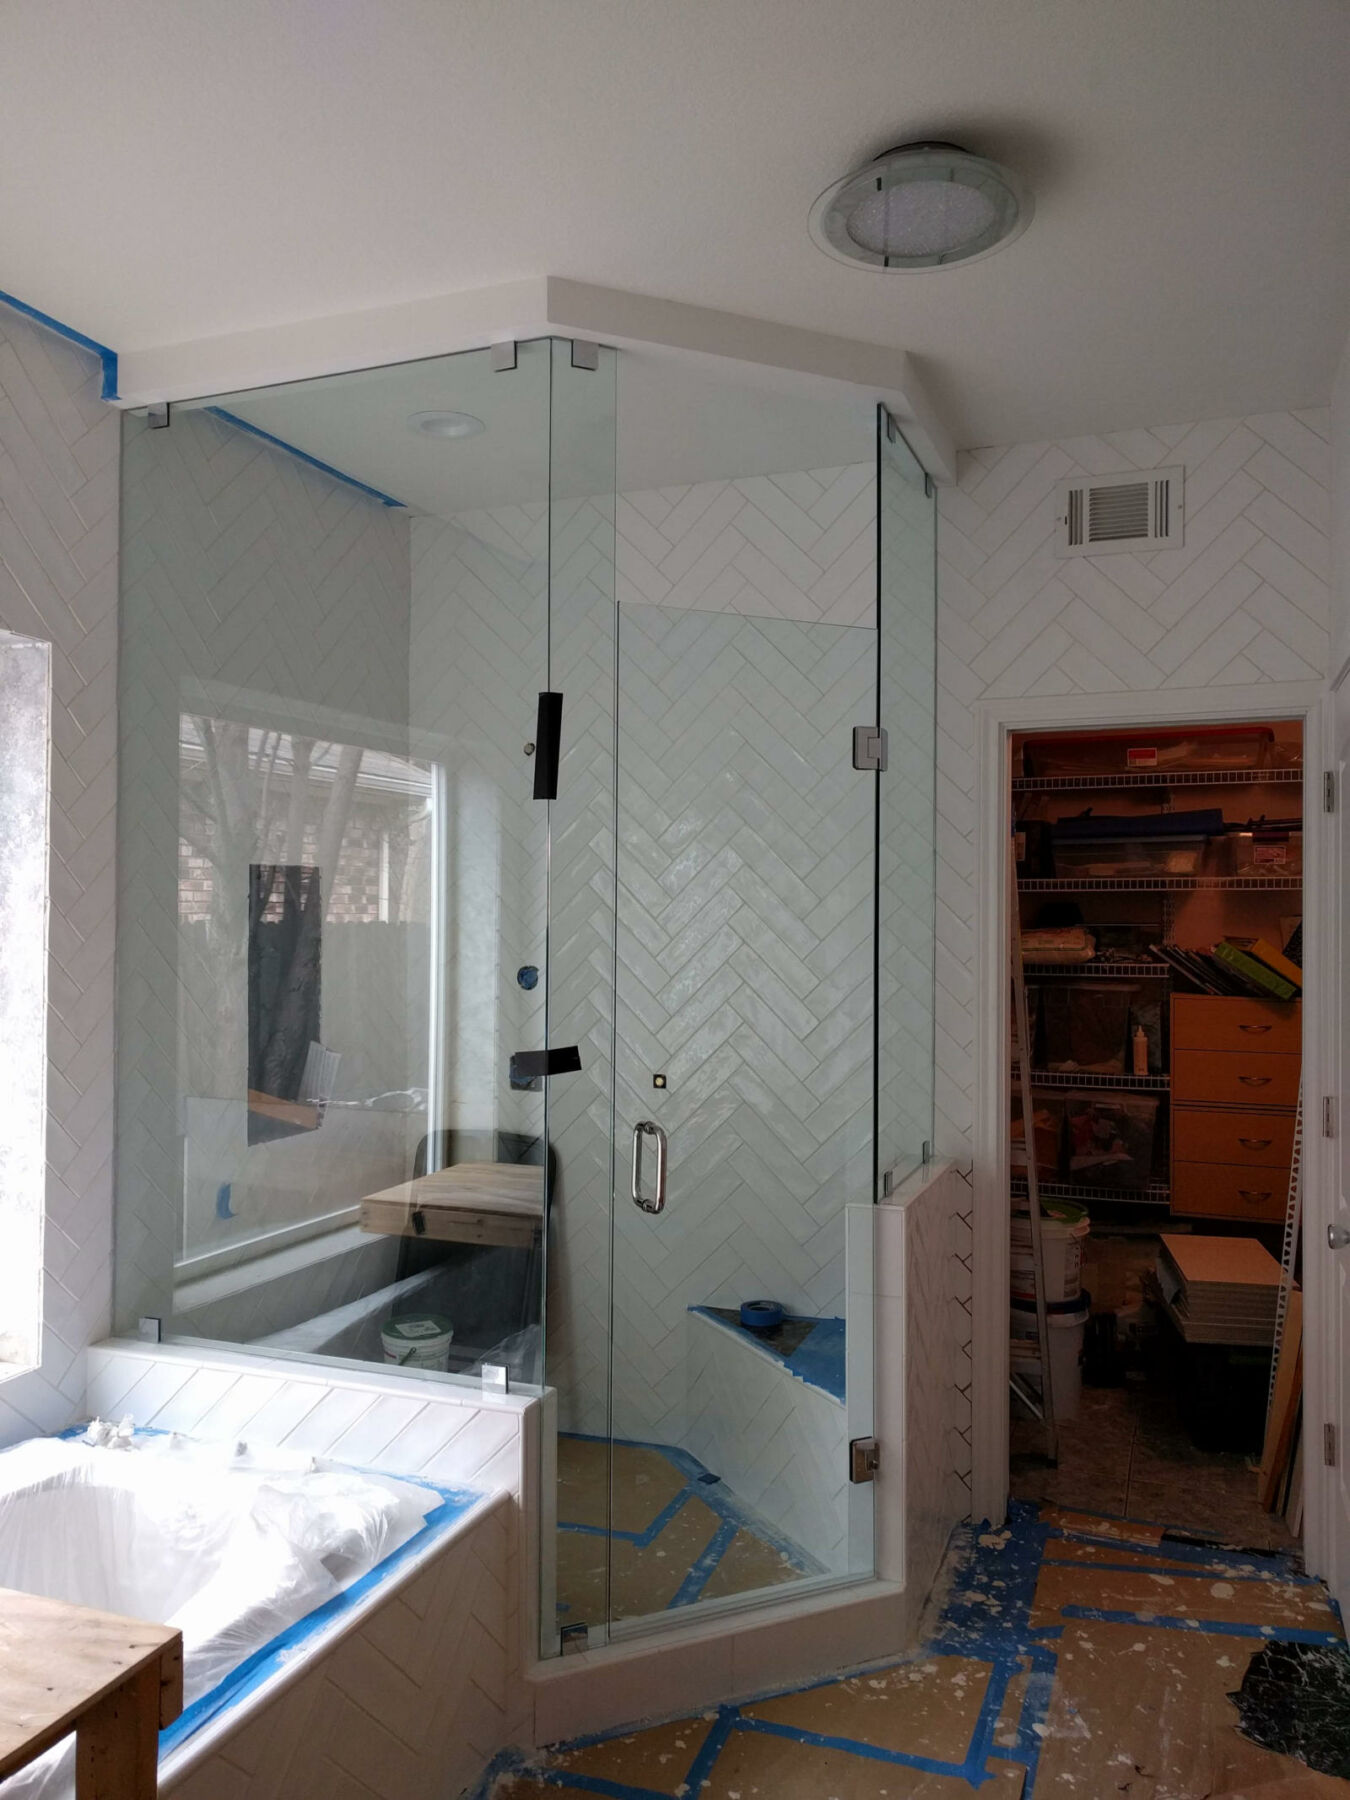 installation of shower glass door bathroom